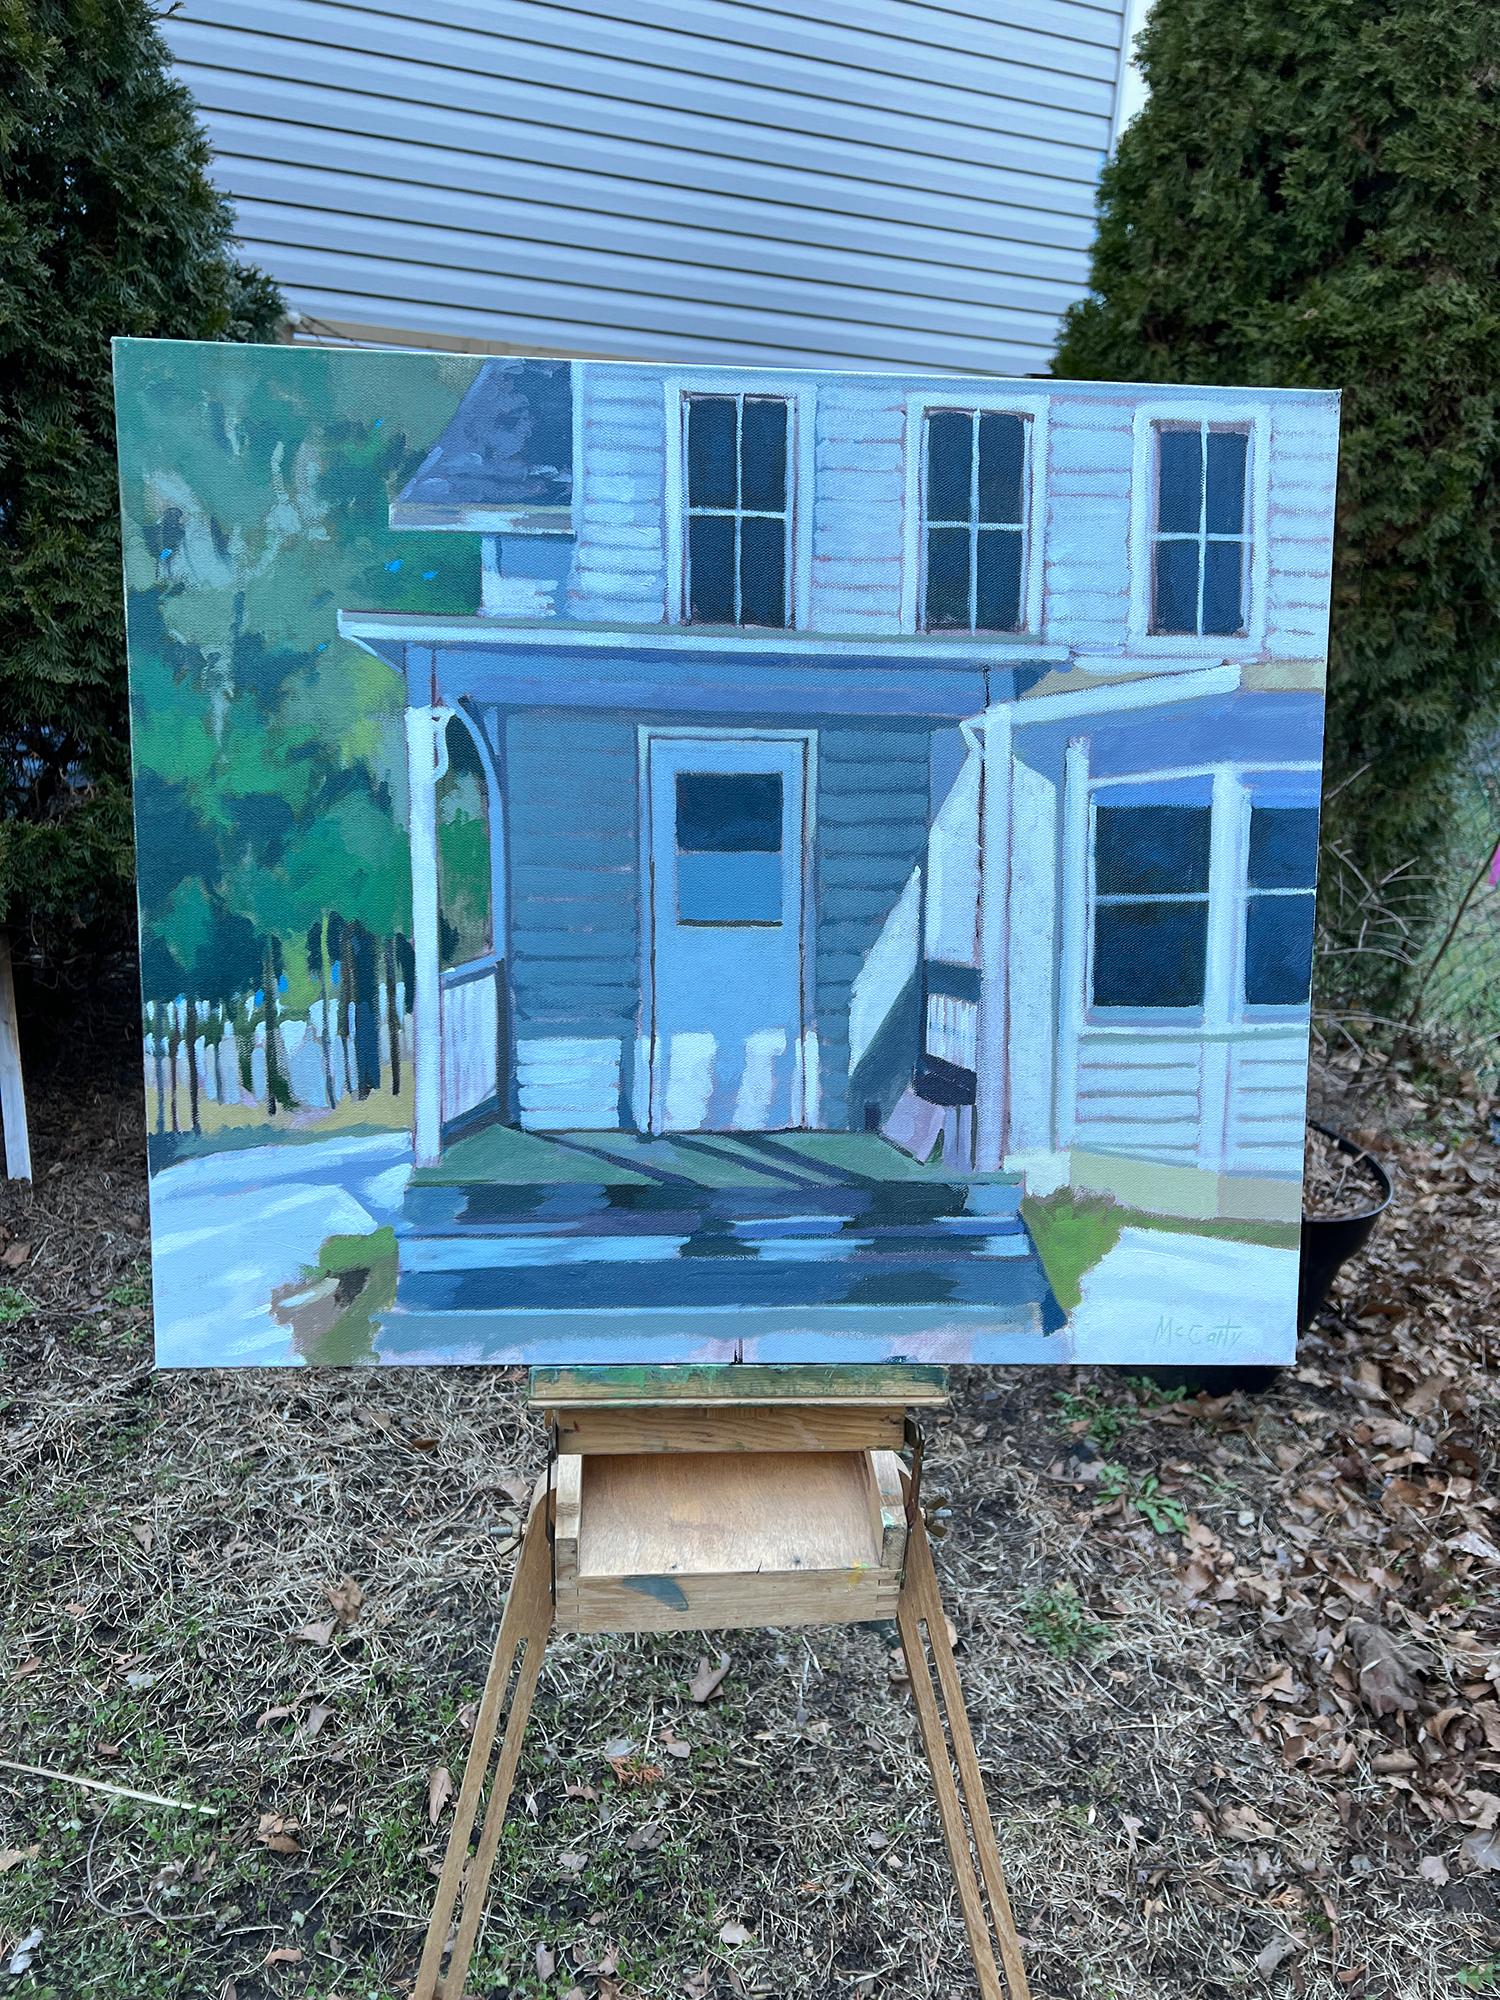 <p>Commentaires de l'artiste<br>L'artiste Brian McCarty peint un aperçu d'une maison à la campagne. Il peint l'œuvre avec une palette froide, correspondant à l'atmosphère paisible du cadre rural. L'hiver arrive et transforme le paysage et le point